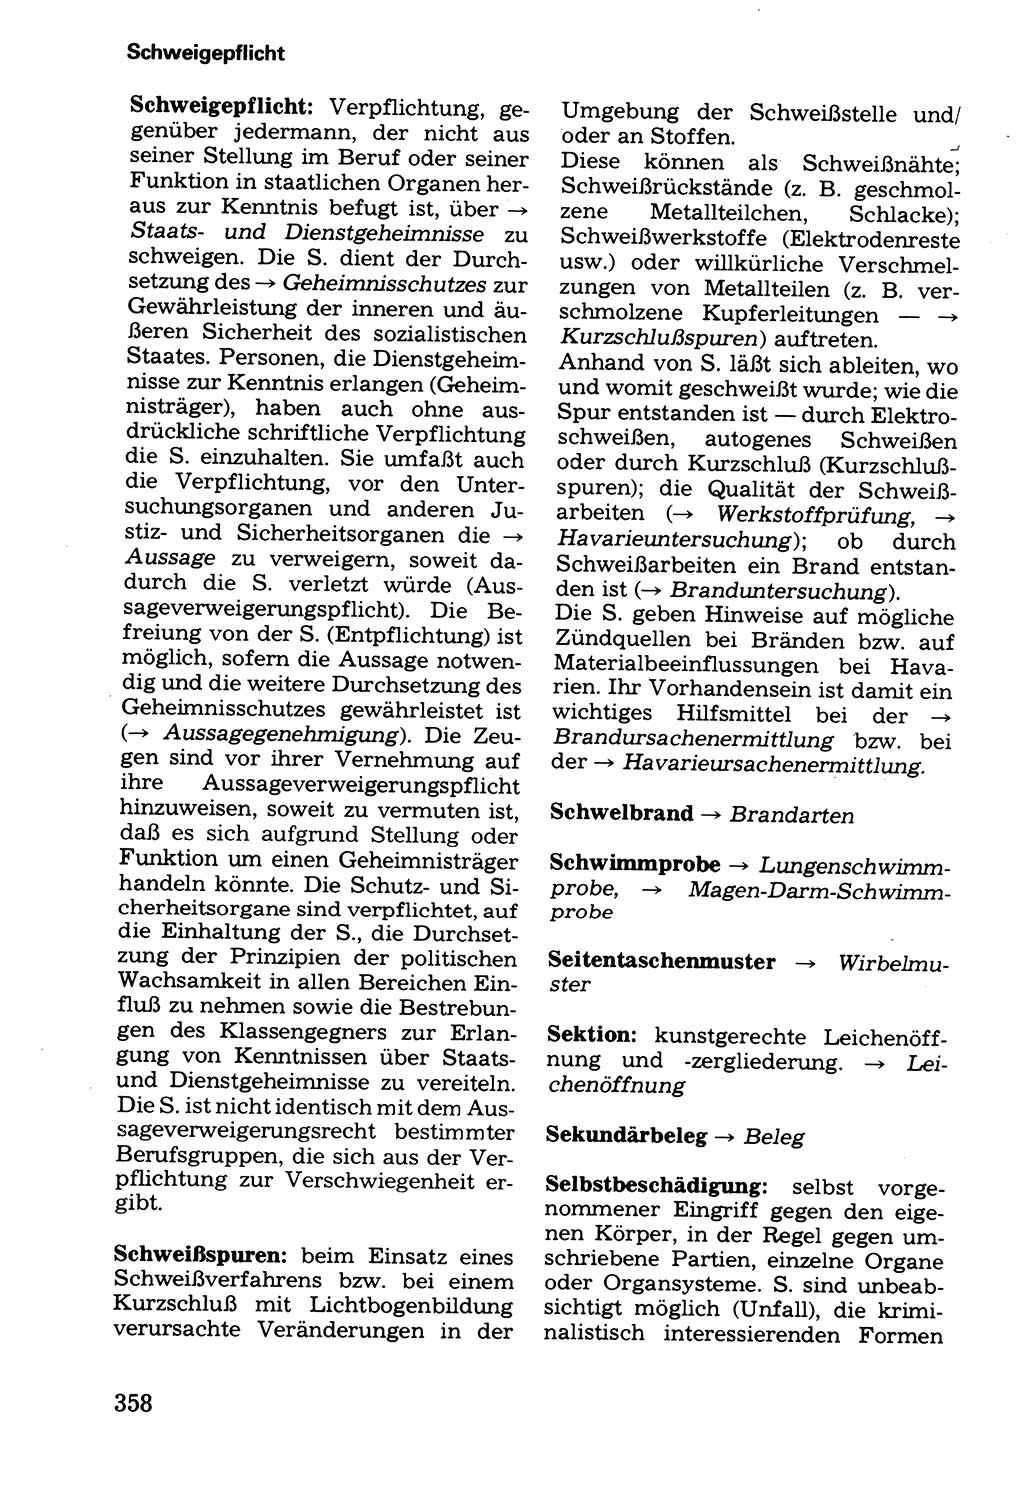 Wörterbuch der sozialistischen Kriminalistik [Deutsche Demokratische Republik (DDR)] 1981, Seite 358 (Wb. soz. Krim. DDR 1981, S. 358)